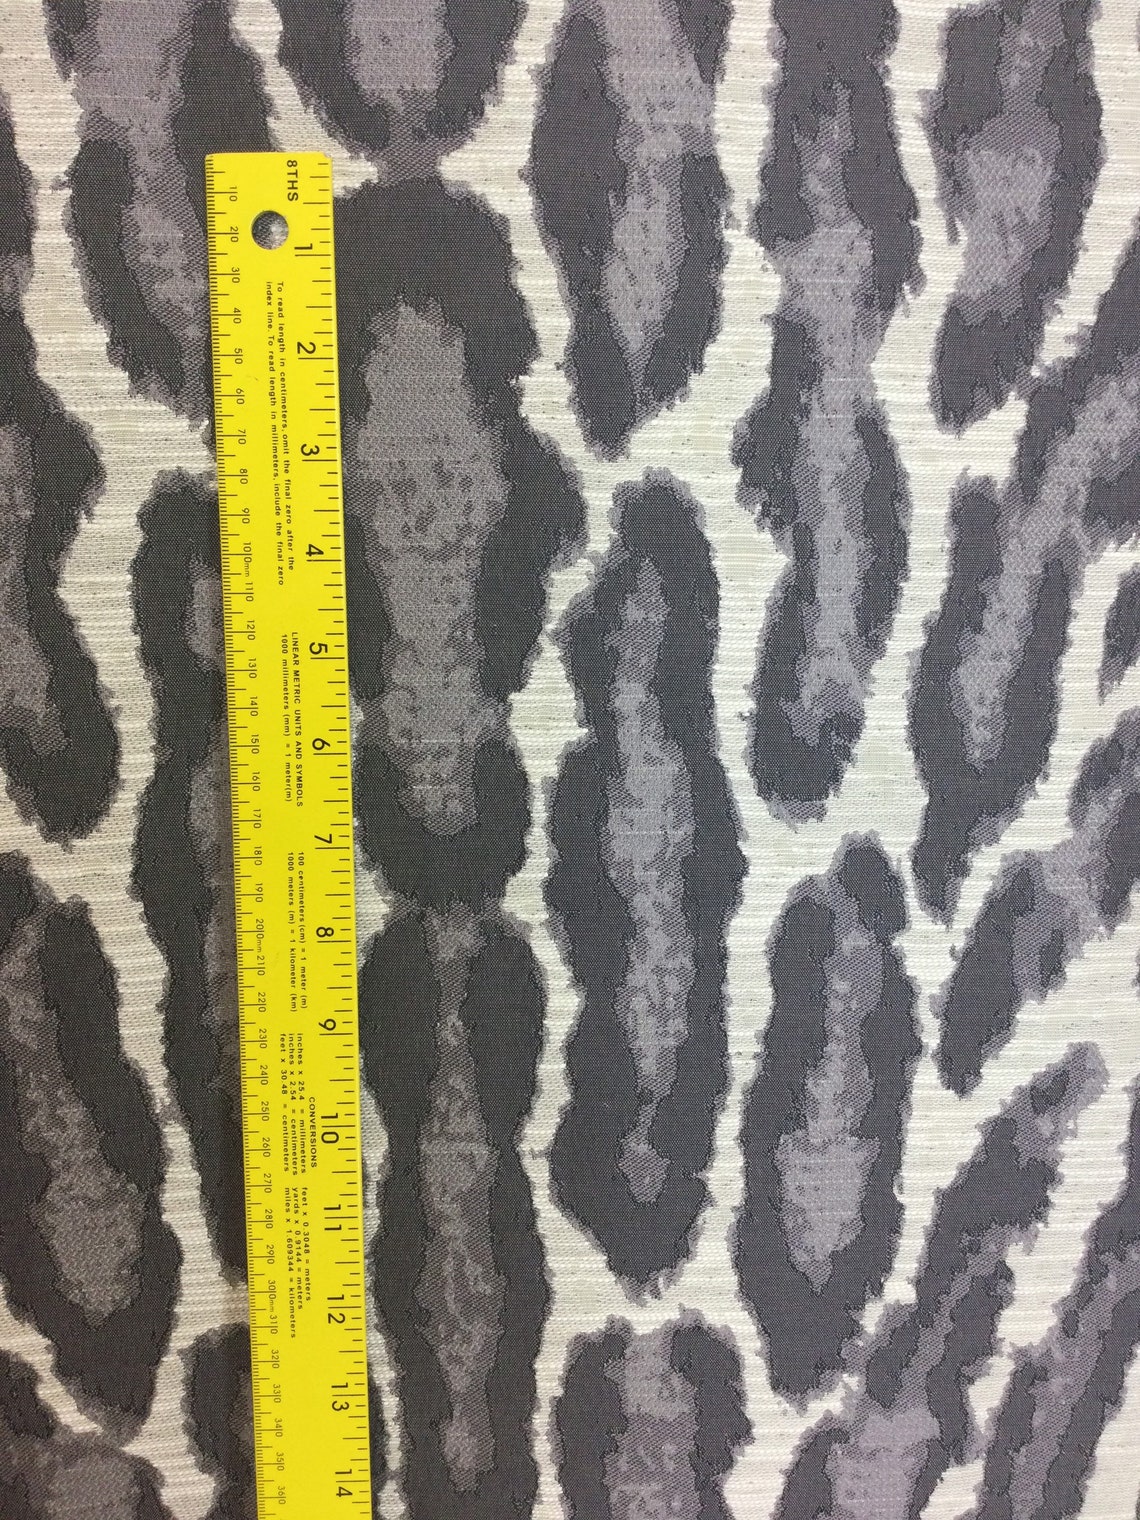 Ocelot Gray Big Cat Animal Print Exotic Animal Fabric | Etsy